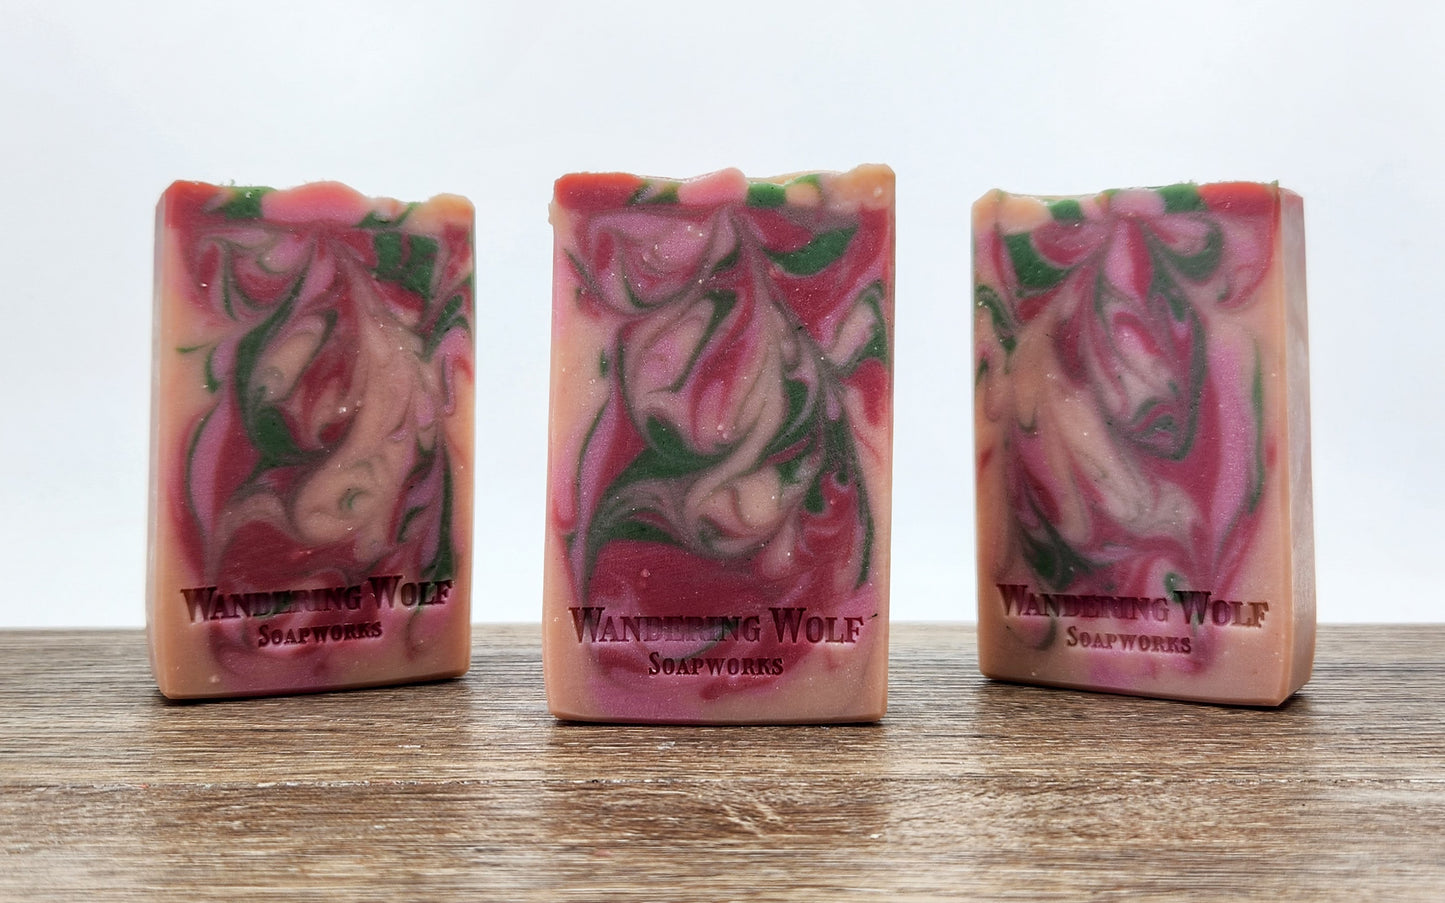 Prairie Rose Bar Soap